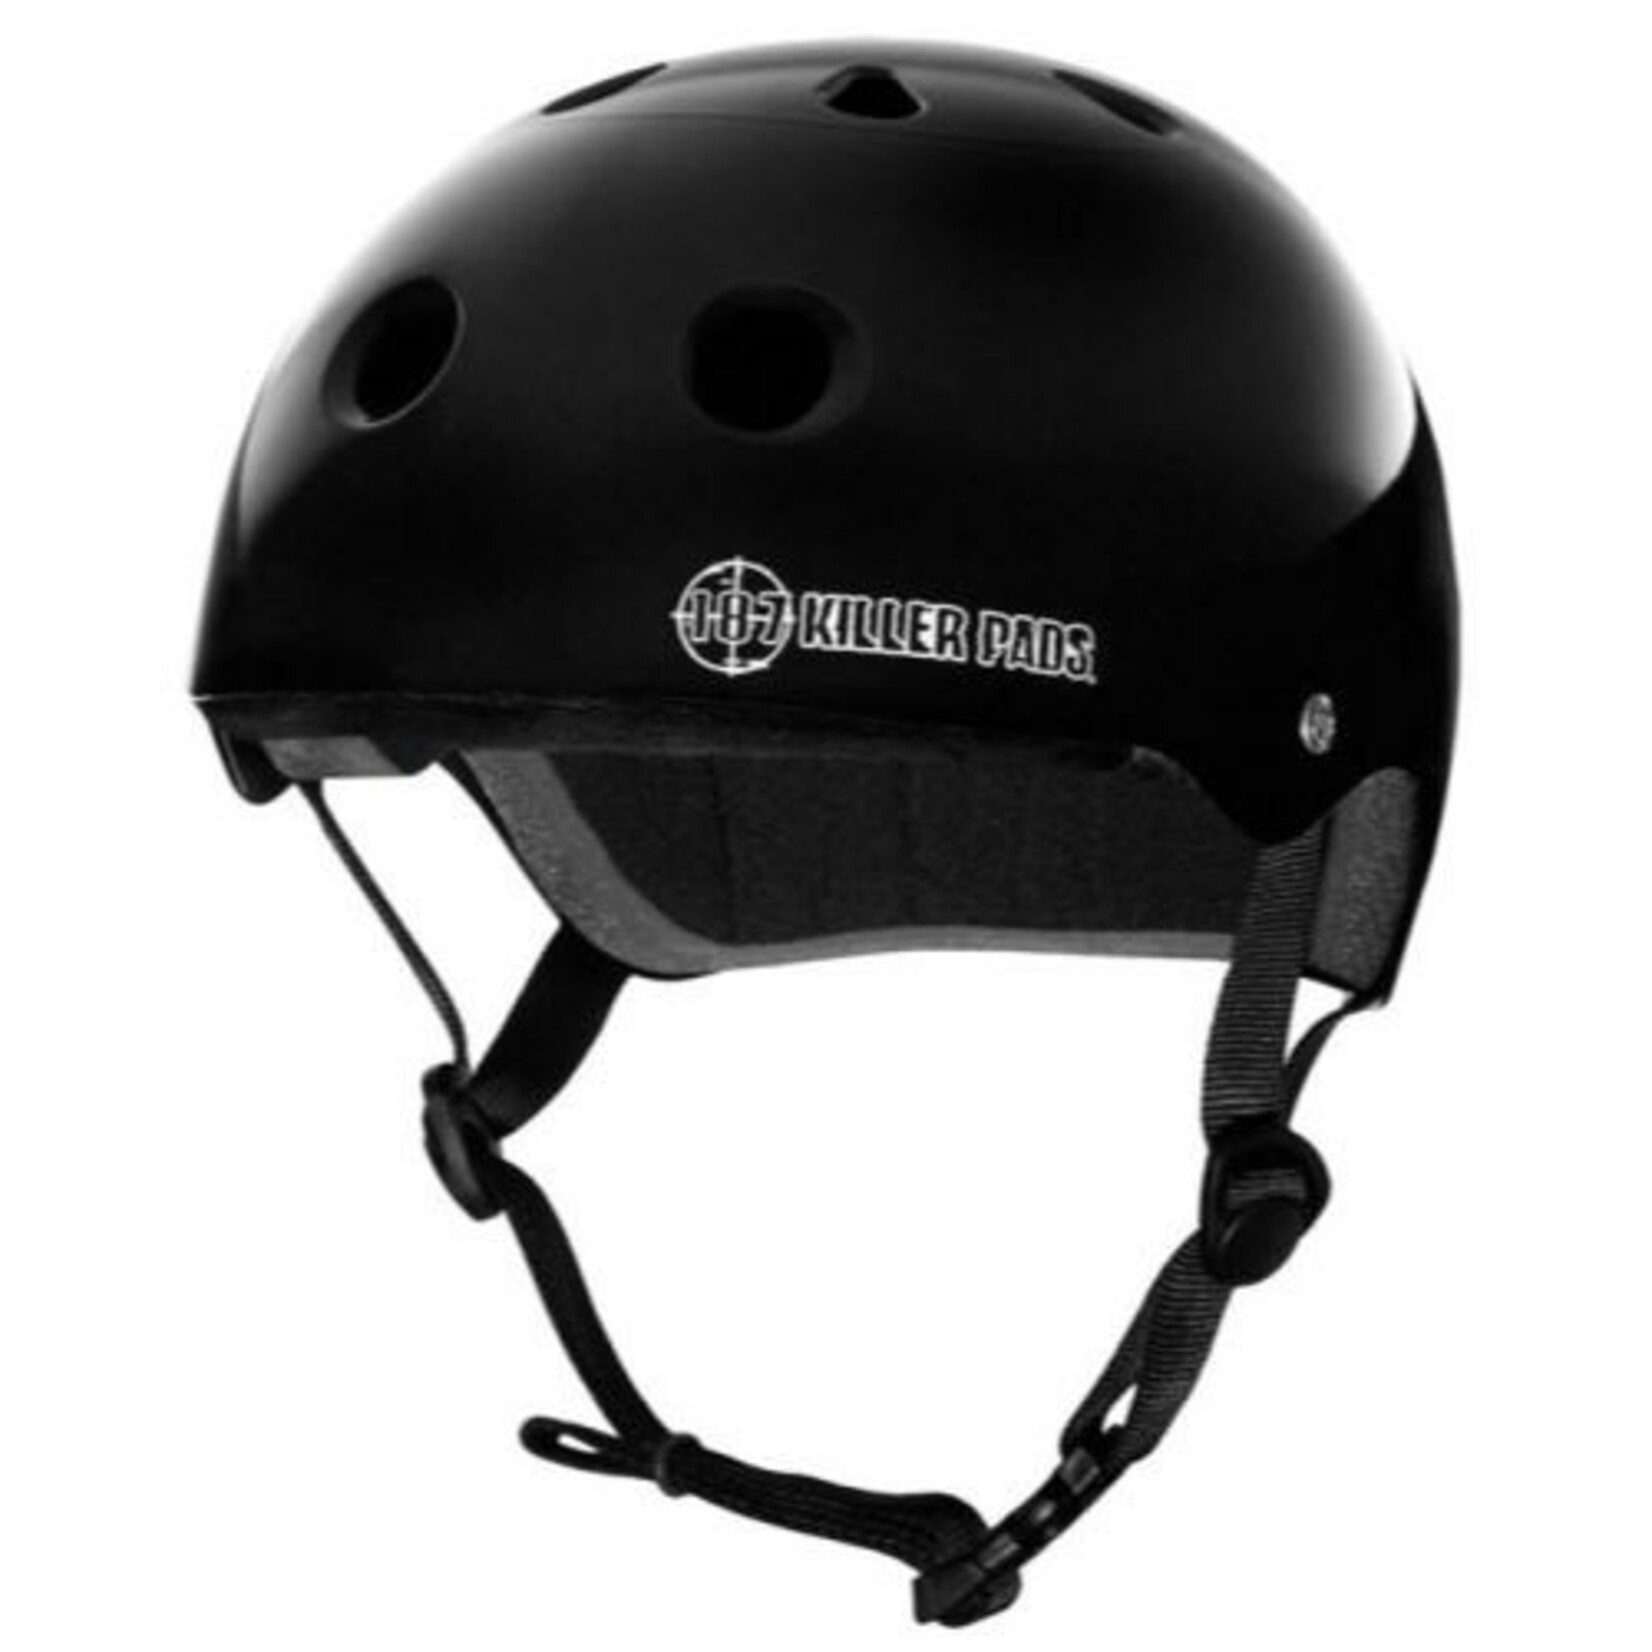 187 Killer Pads 187 Killer Pads Pro Skate Helmet Black - XX-Large